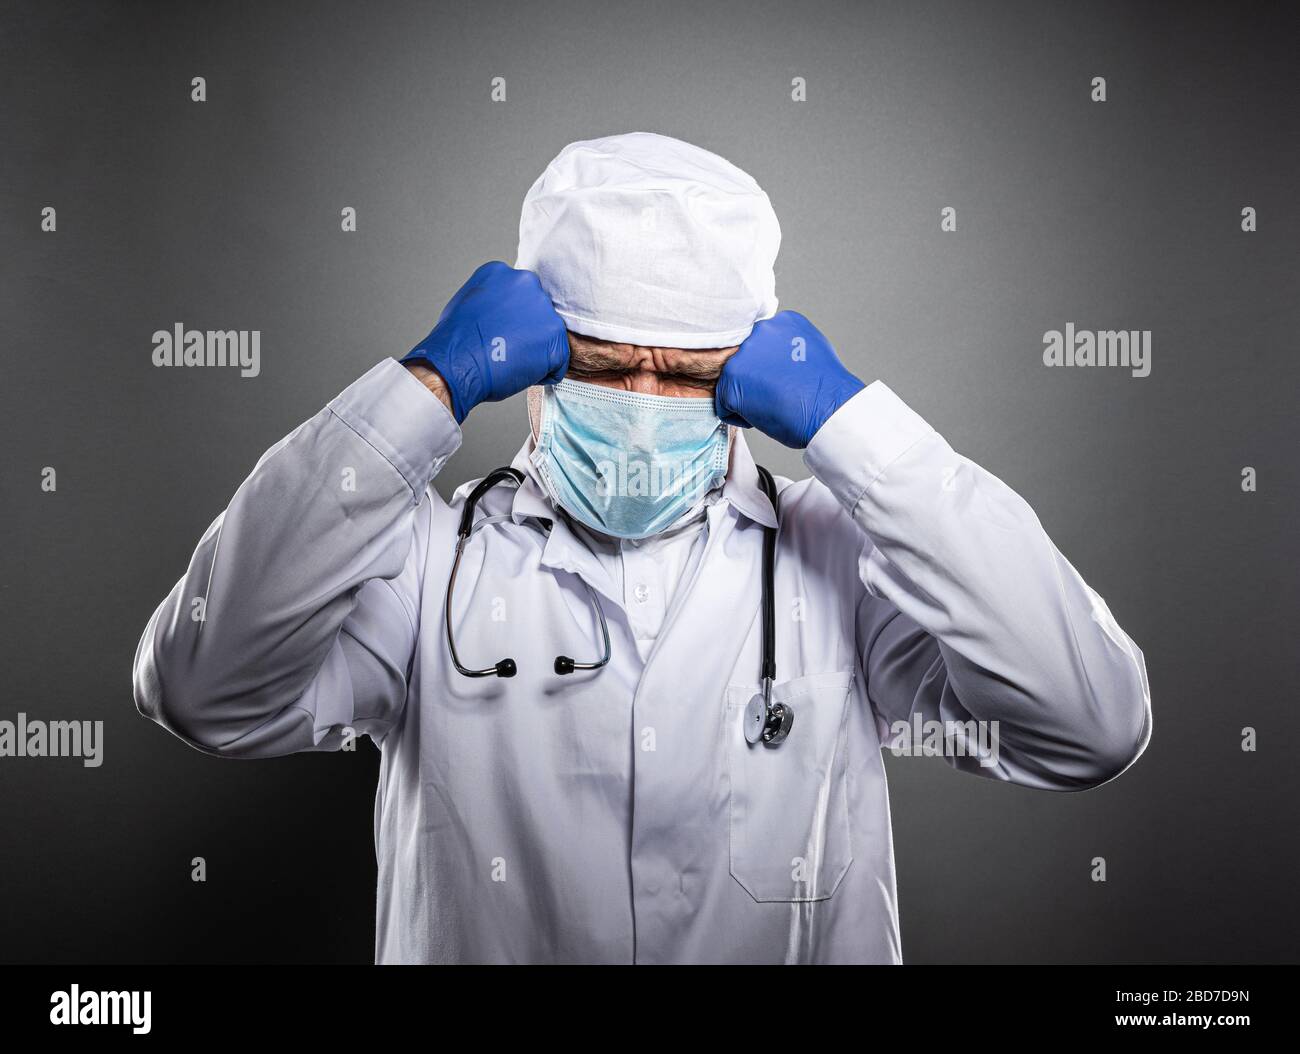 Medico stanco lavorato in uniforme bianca e maschera medica. Foto Stock